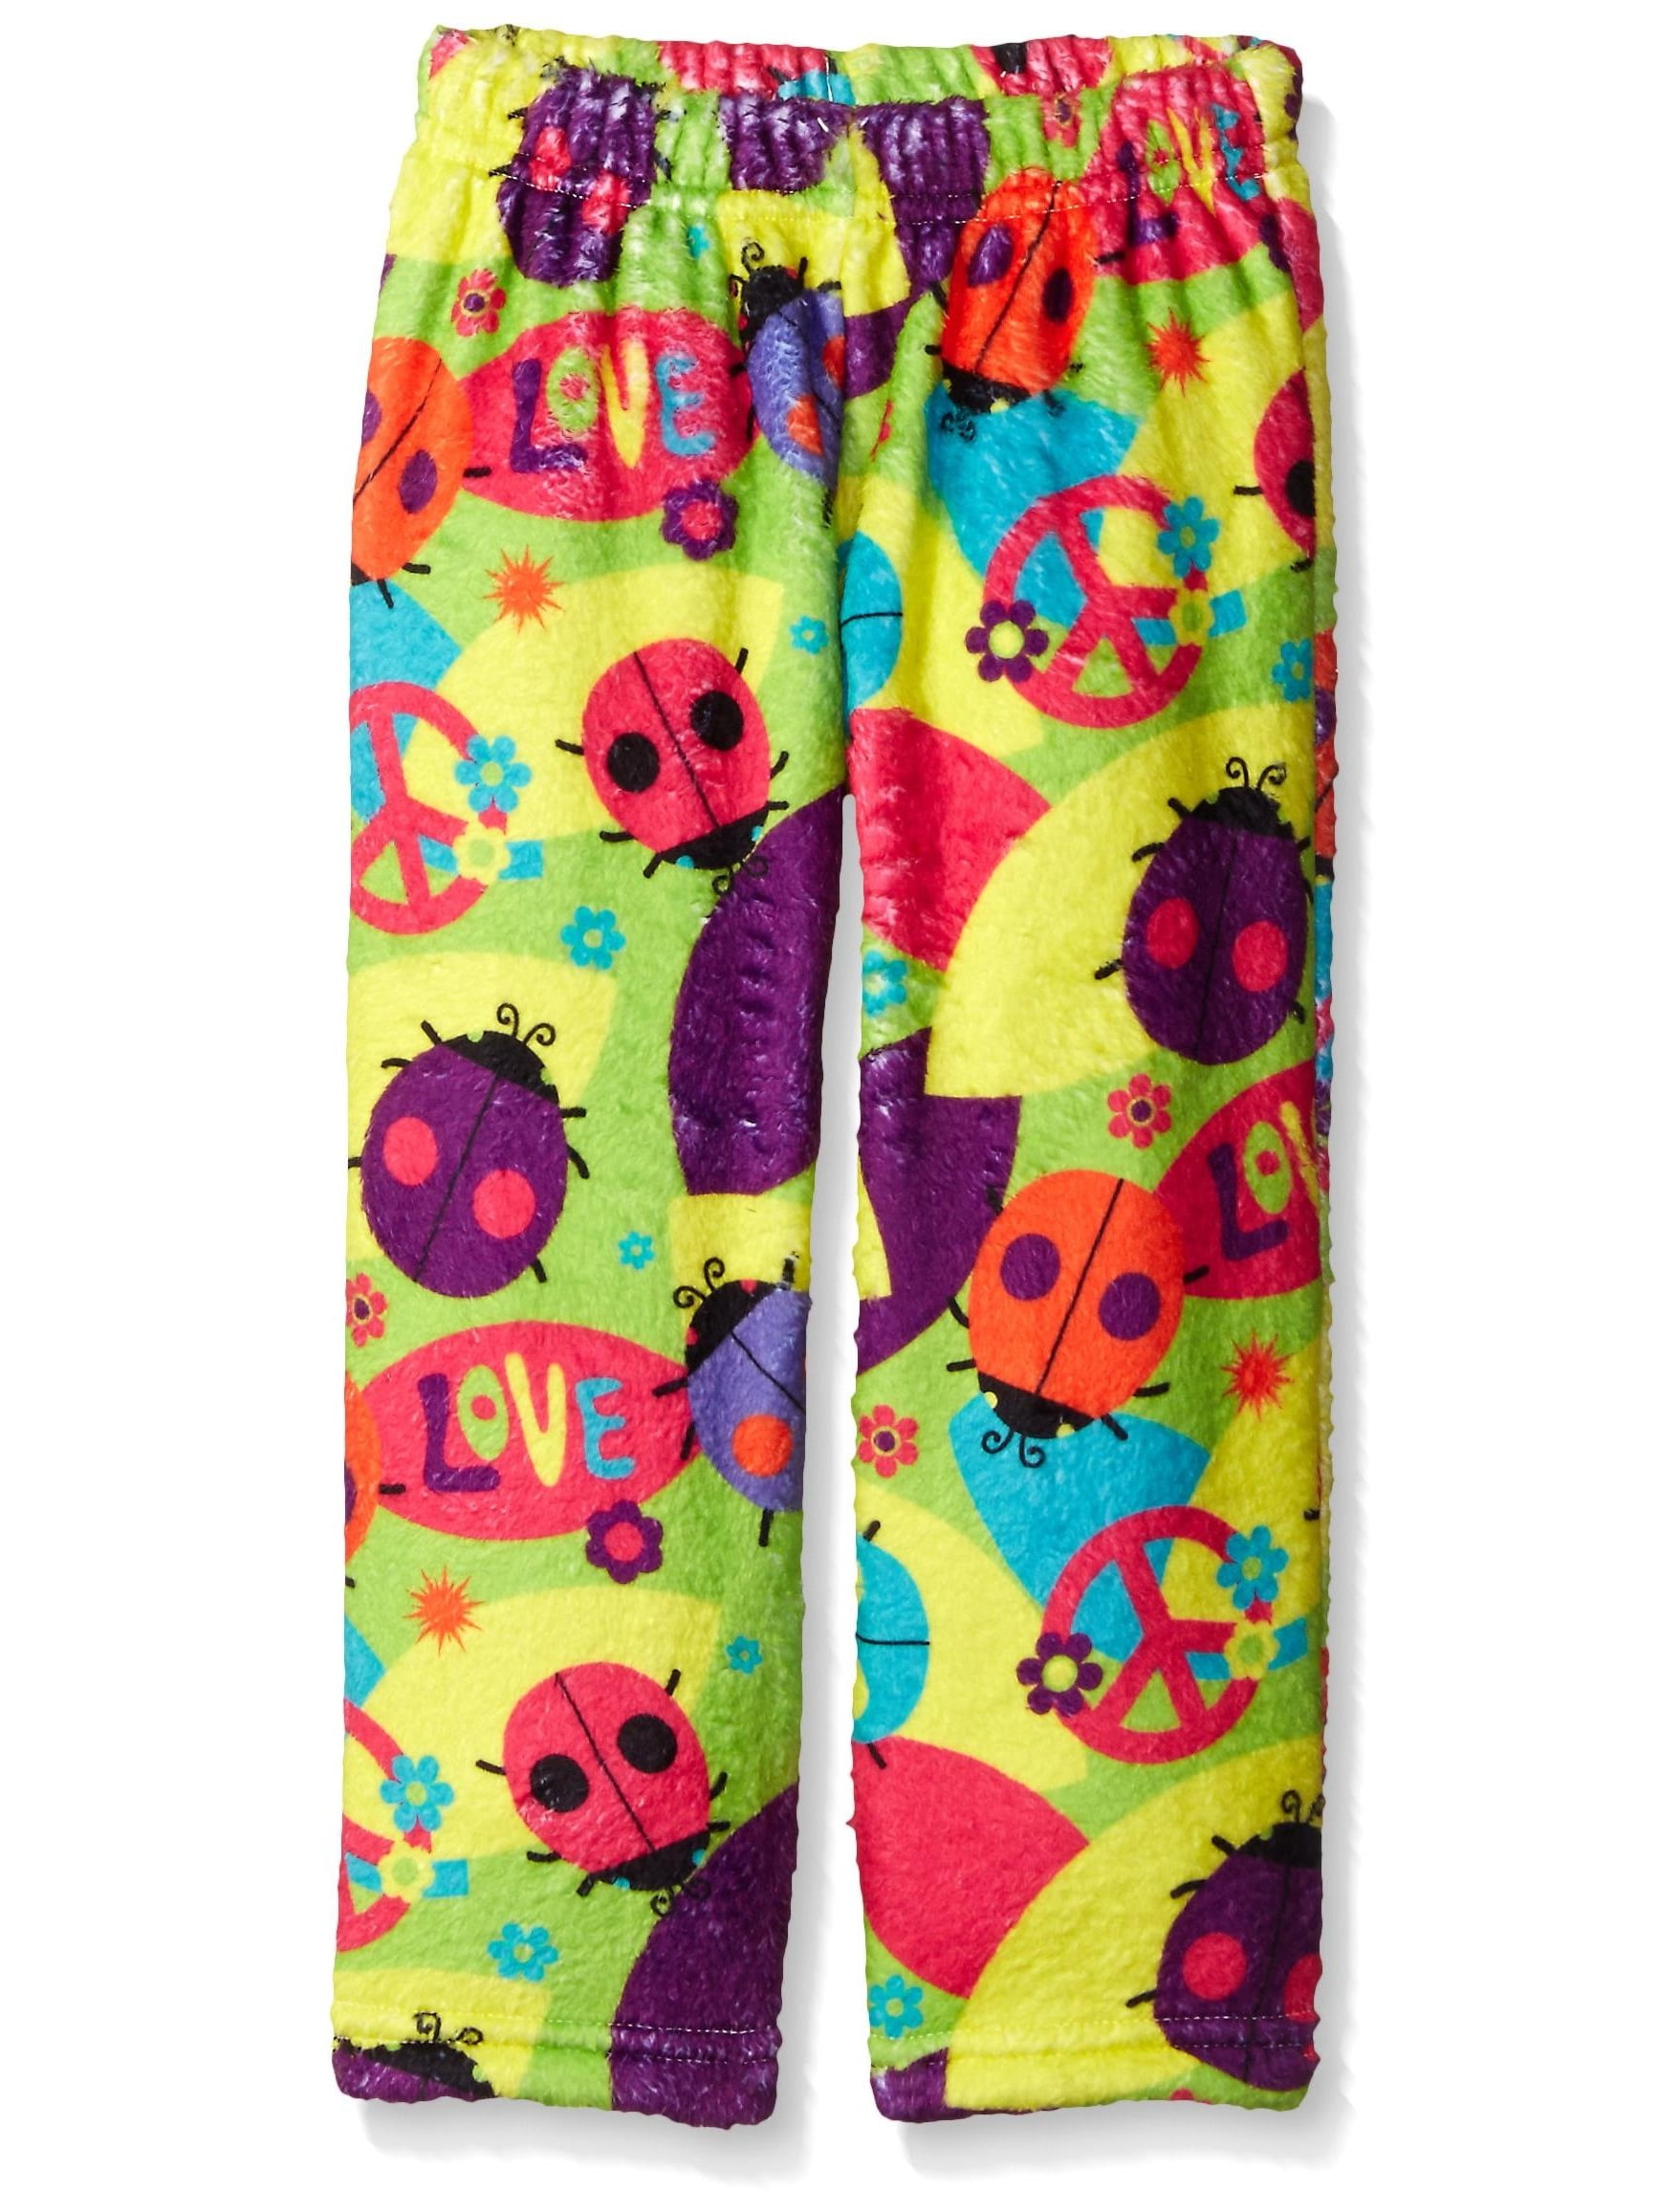 Up Past 8 Girls Pajama Pants Plush Sleepwear Kids Fun Print Pants, Love ...